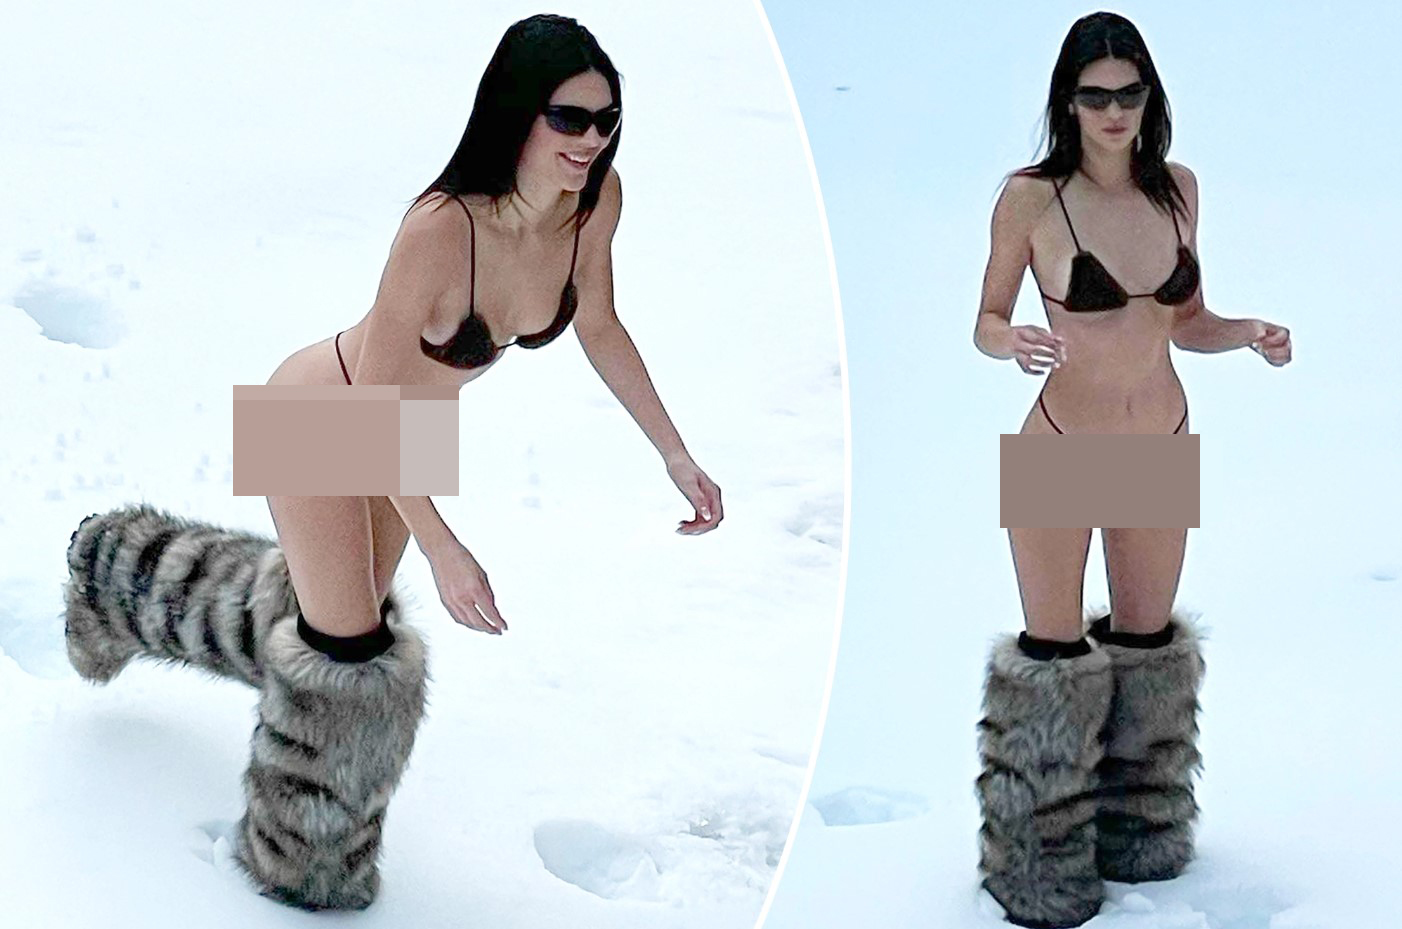 Cư dân mạng nhắc đến những tấm hình diện áo tắm chụp hình dưới tuyết của Kendall Jenner.